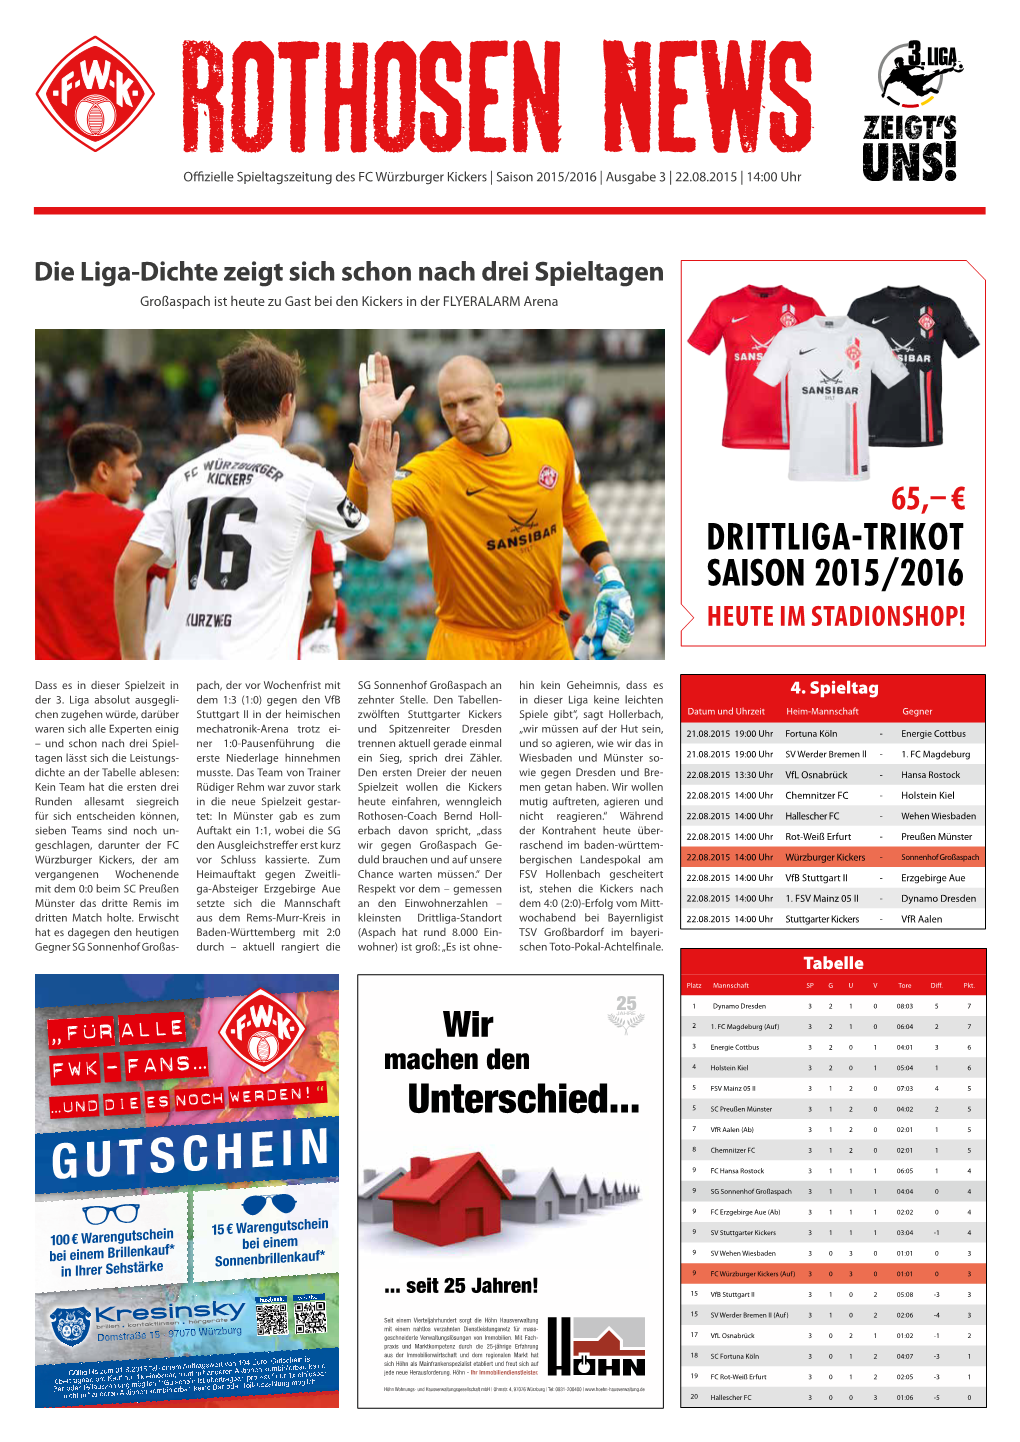 Rothosen News Ausgabe 3 / Saison 2015/16 / 3